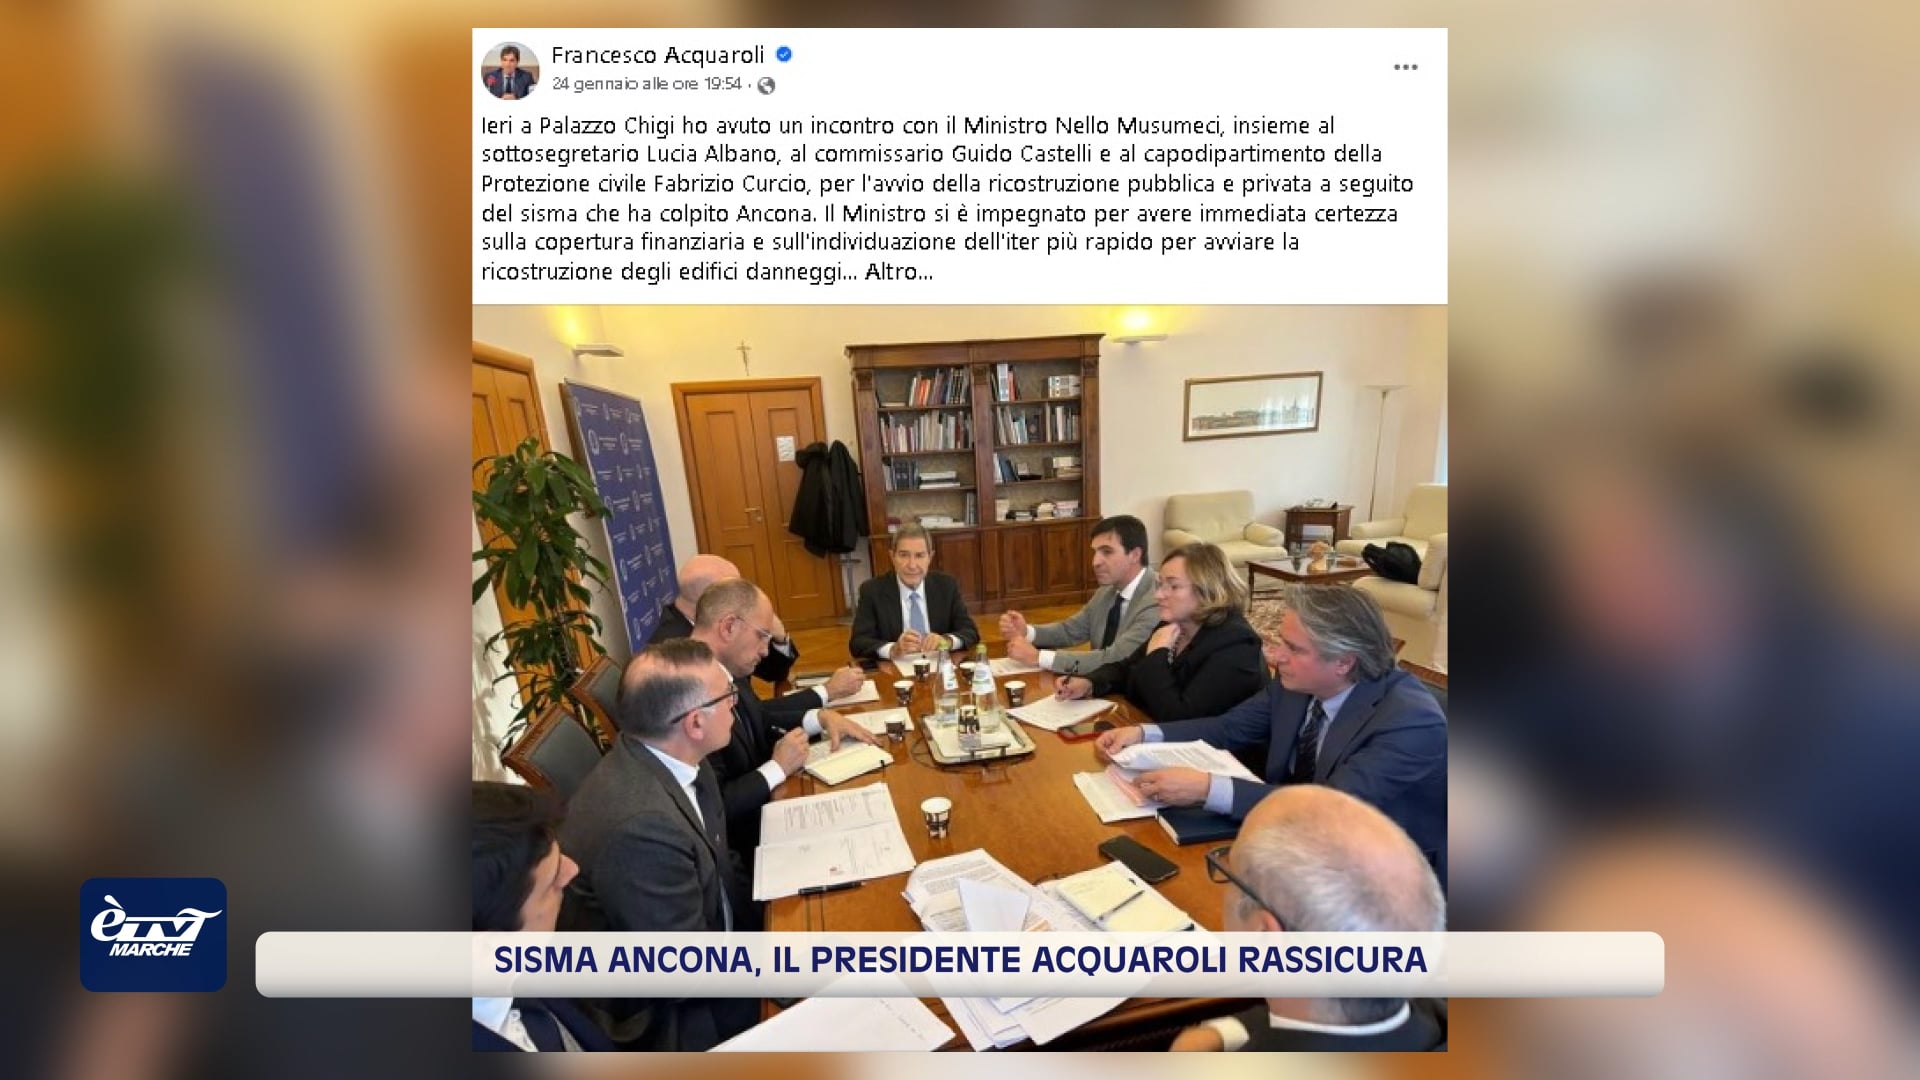 Sisma di Ancona. Il presidente Acquaroli rassicura - VIDEO